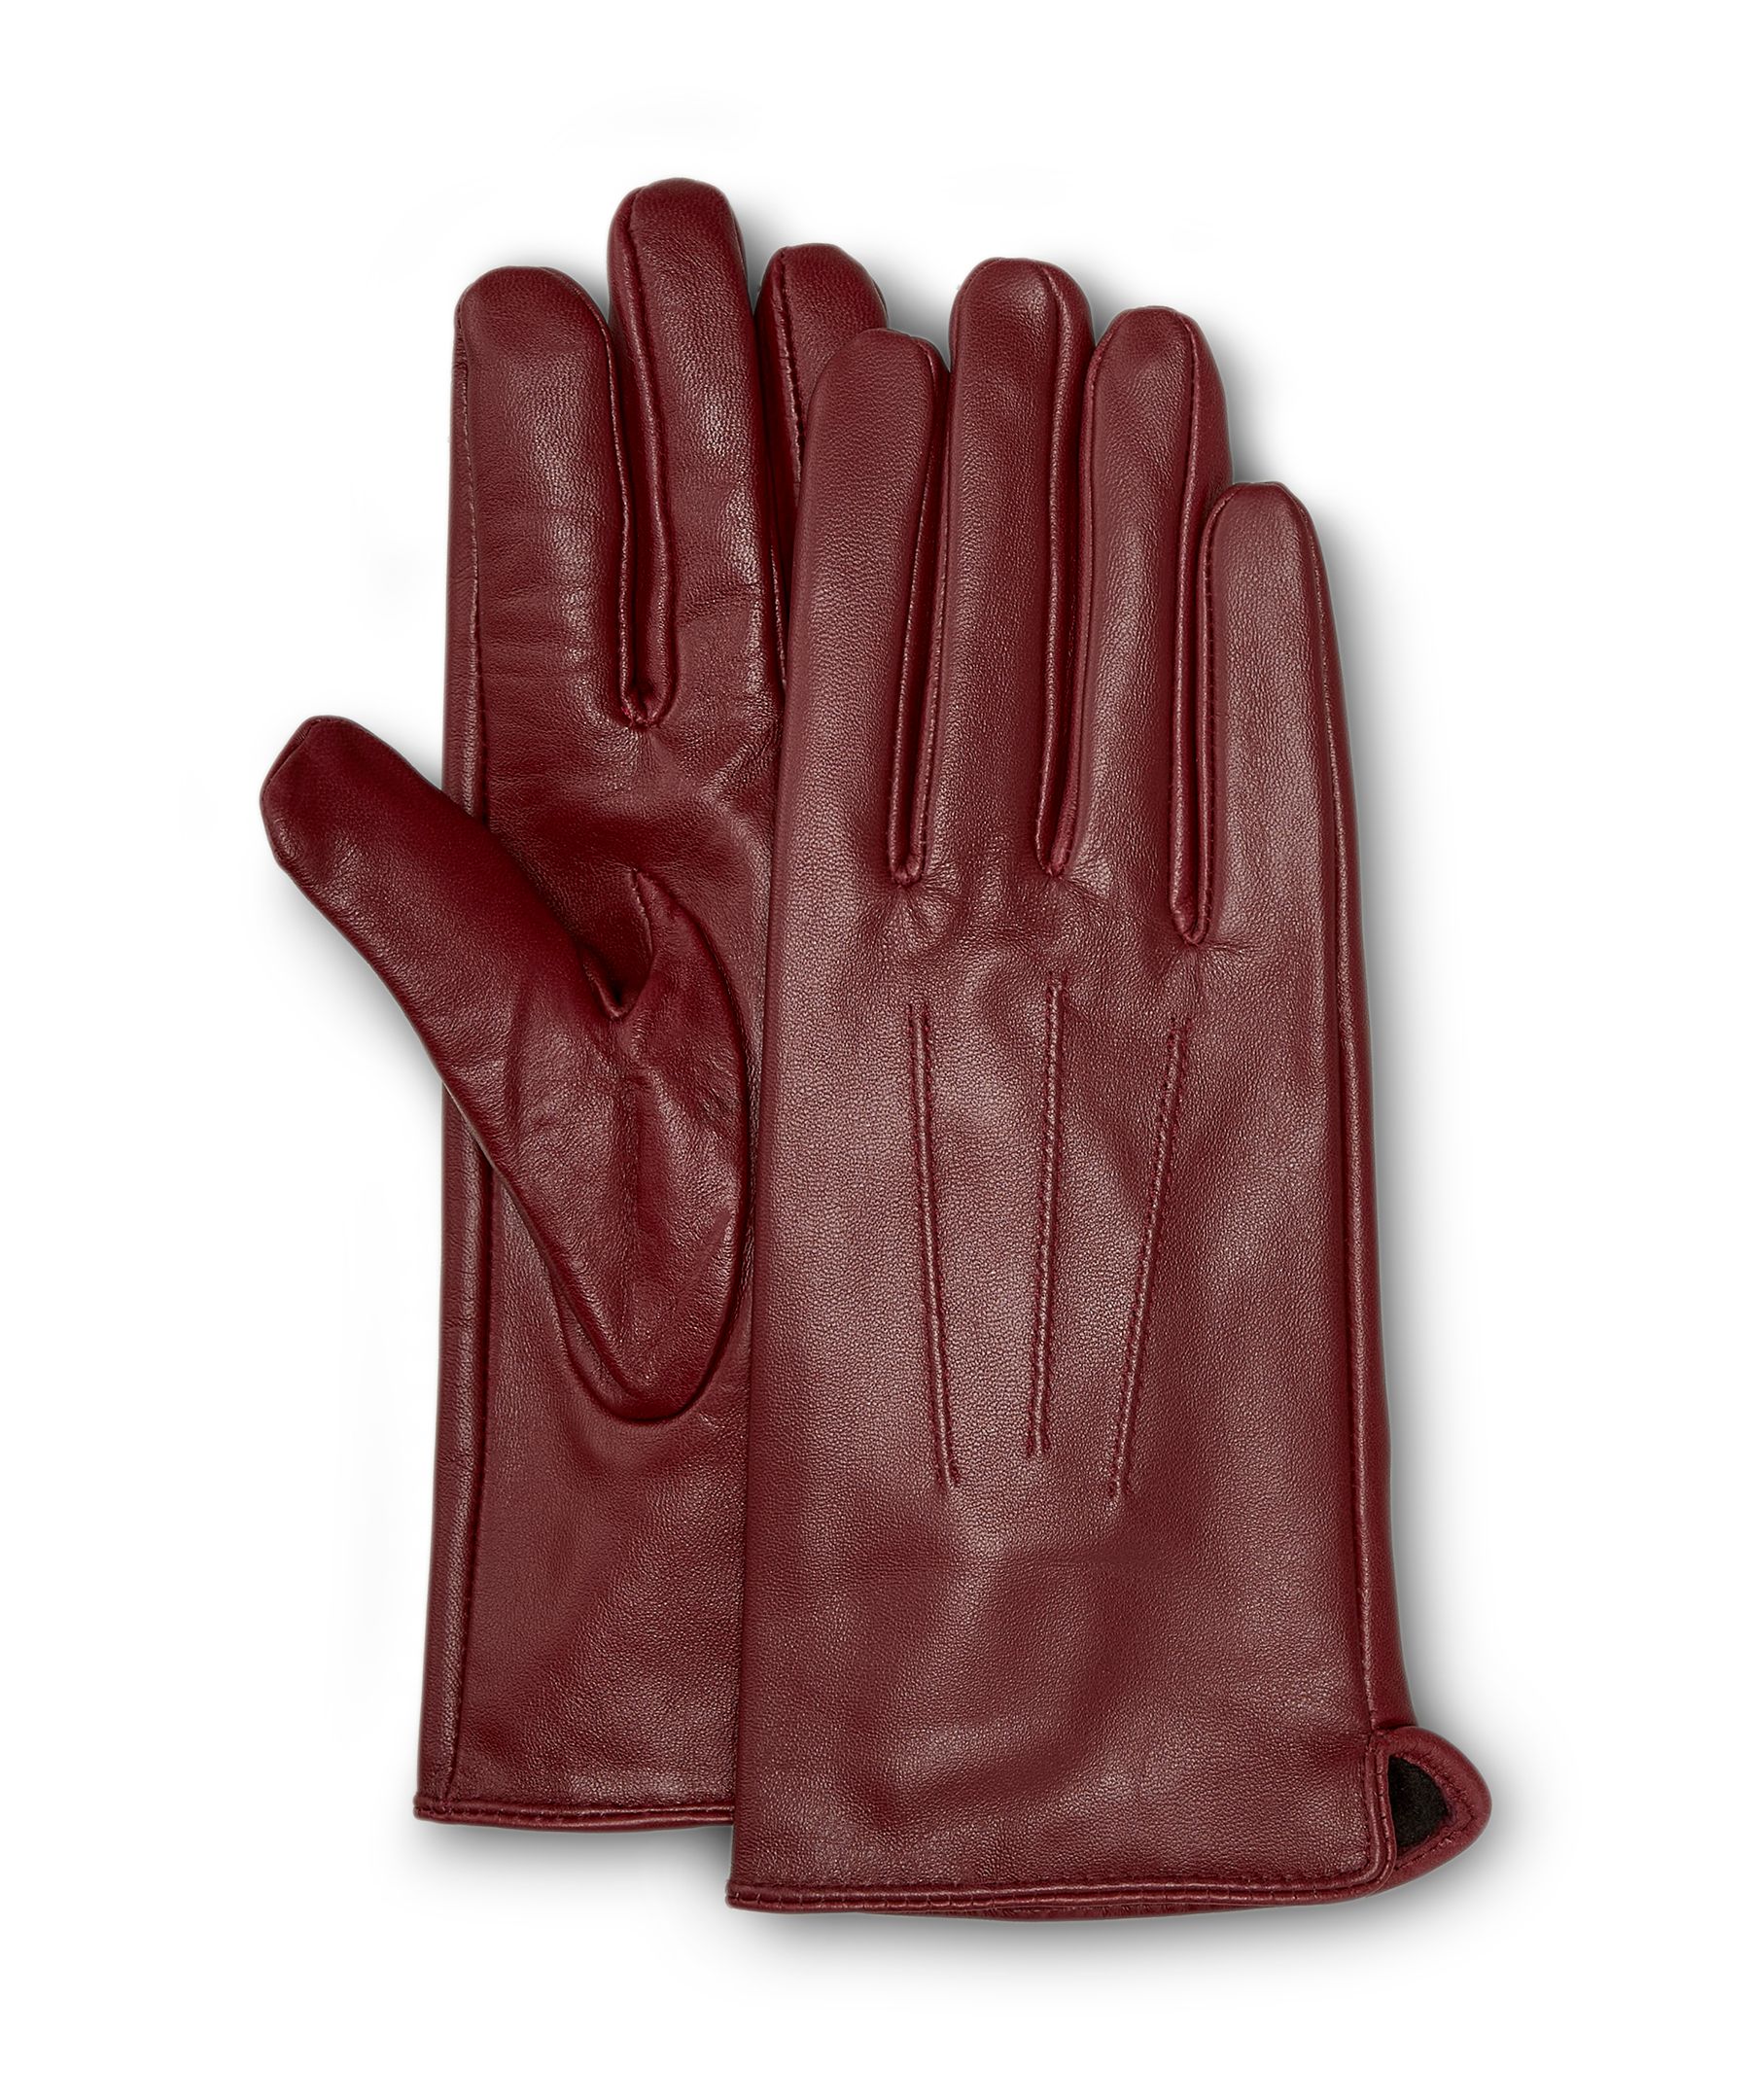 Gants en cuir pour hommes et femmes, gants durables à manches extra longues  et paumes